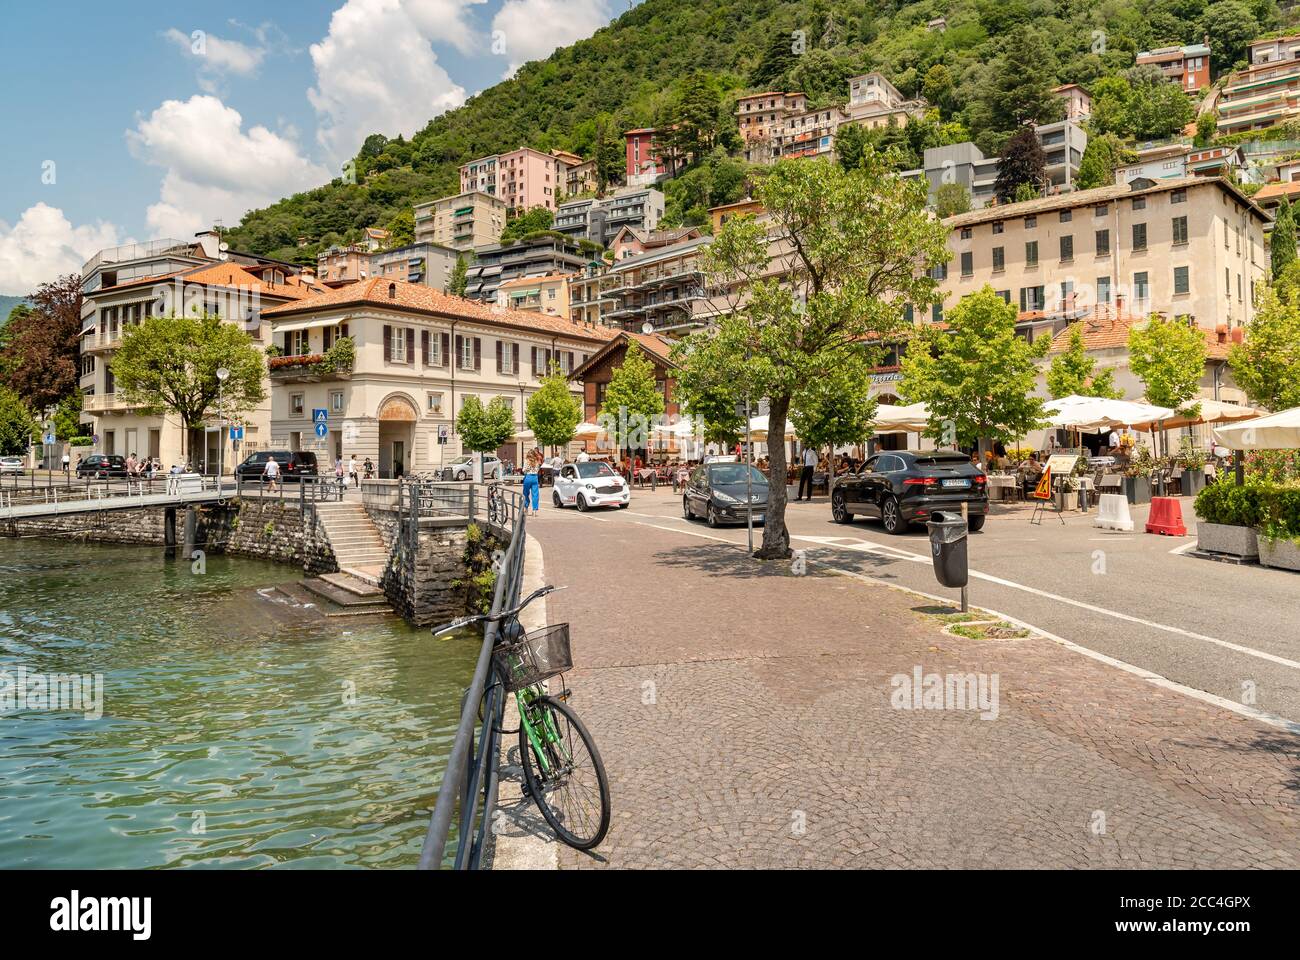 Como, Lombardía, Italia - 18 de junio de 2019: Personas que disfrutan de bares y restaurantes al aire libre en el paseo marítimo del Lago como en un caluroso día de verano en la ciudad de como, ITA Foto de stock